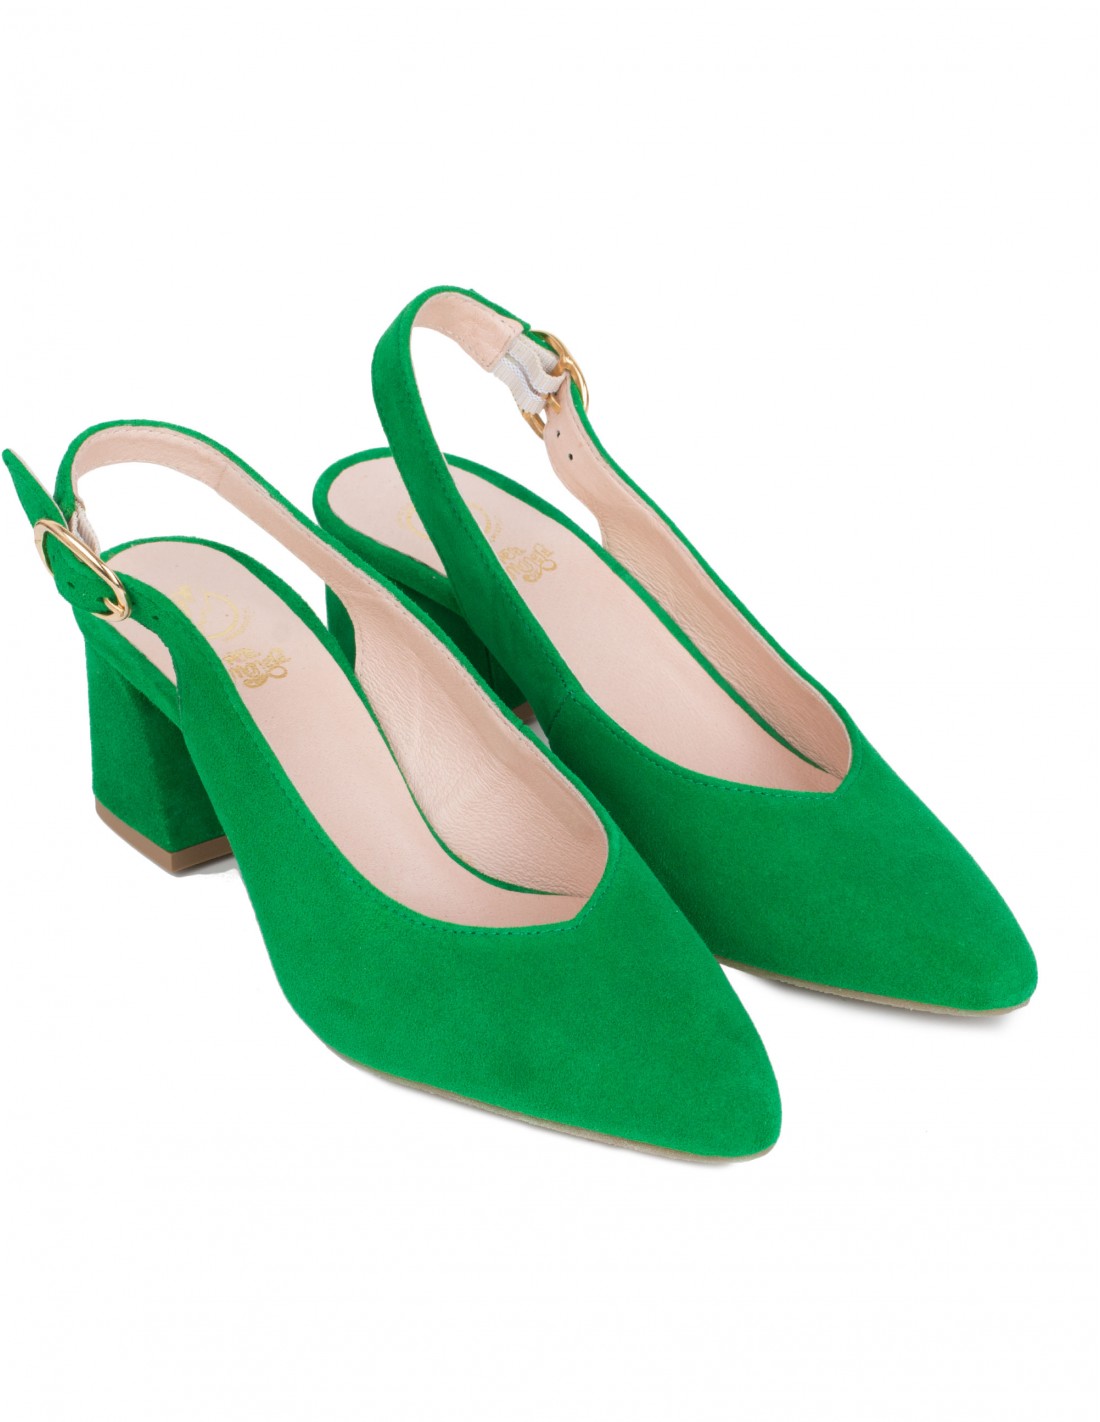 Zapatos Verdes Destalonados Ancho PERA LIMONERA